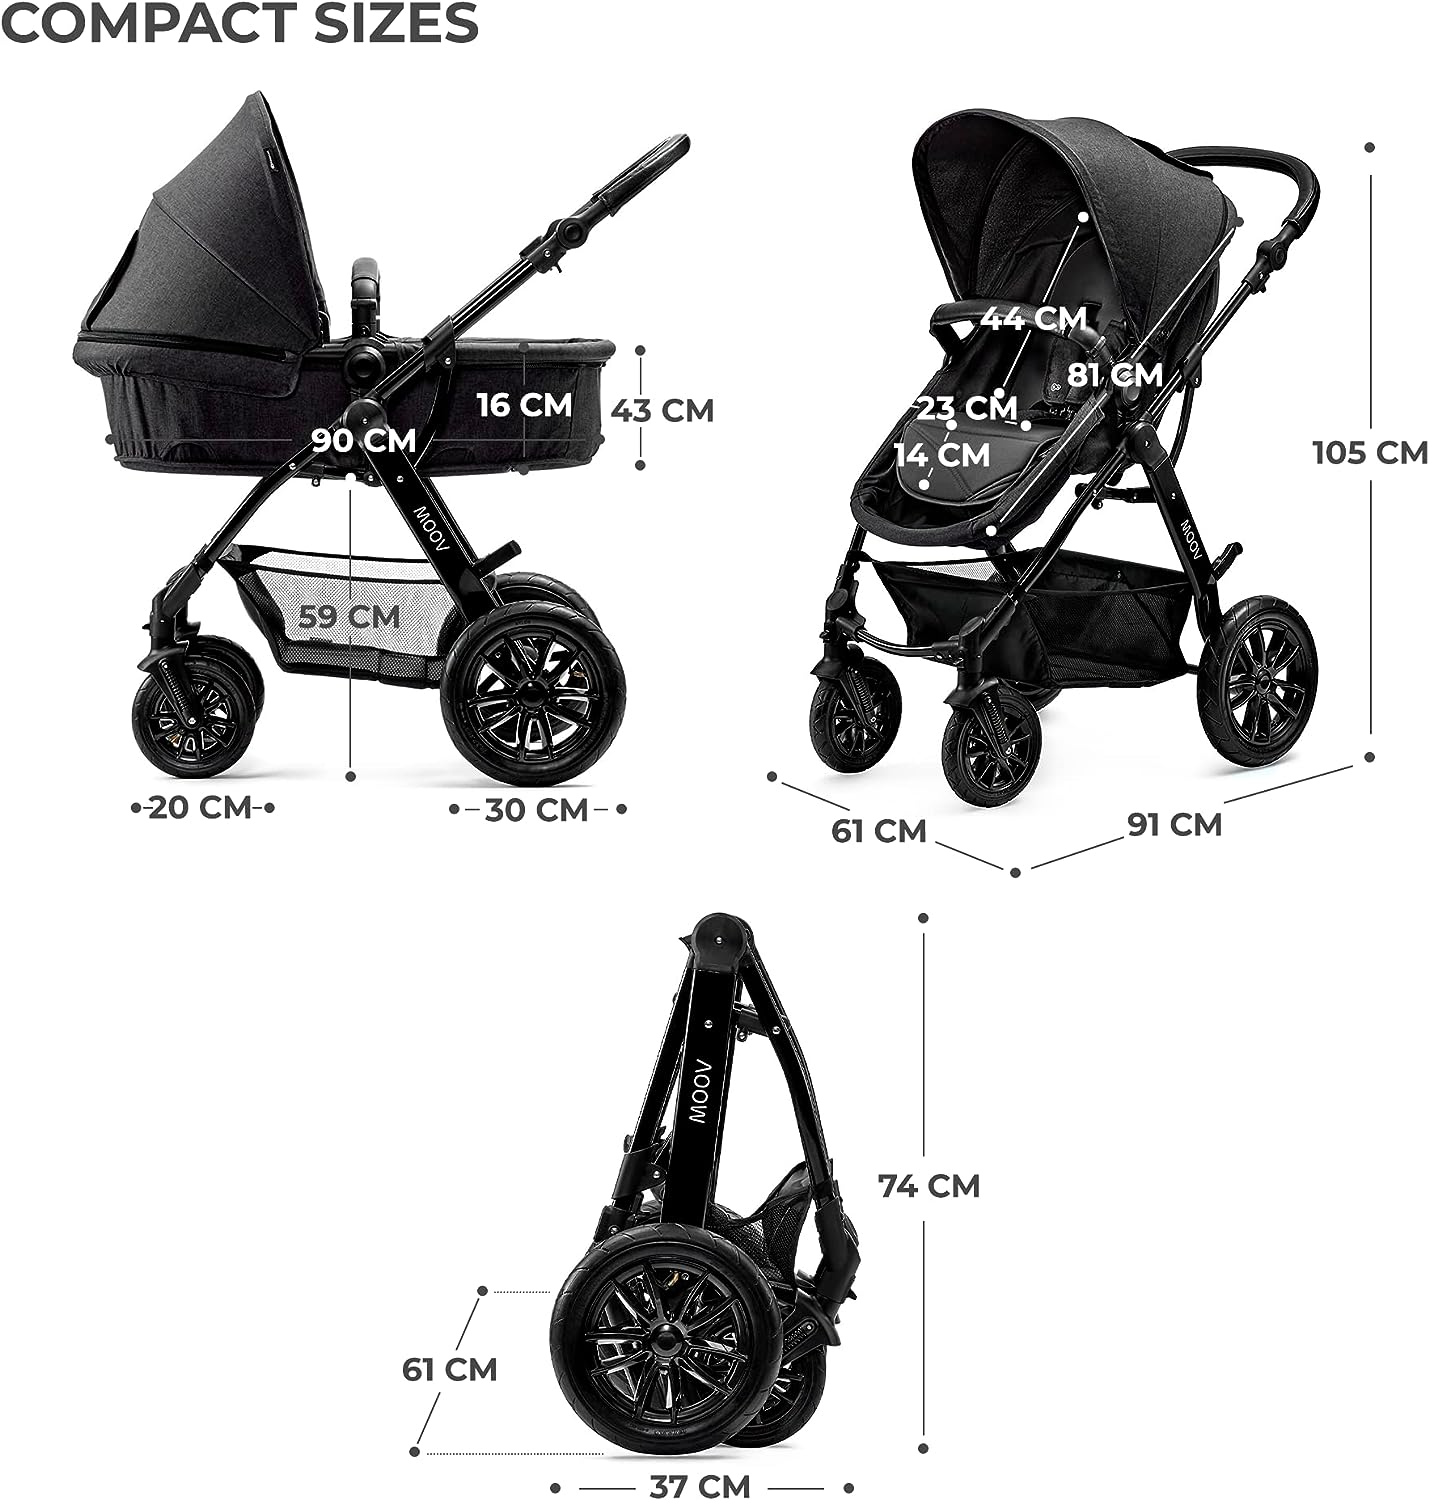 KinderKraft Conjunto de carrinho de bebê 3 em 1 MOOV, sistema de viagem, carrinho de bebê, carrinho, dobrável, com cadeirinha infantil, acessórios, capa de chuva, protetor de pé, para recém-nascido, do nascimento aos 3 anos, preto